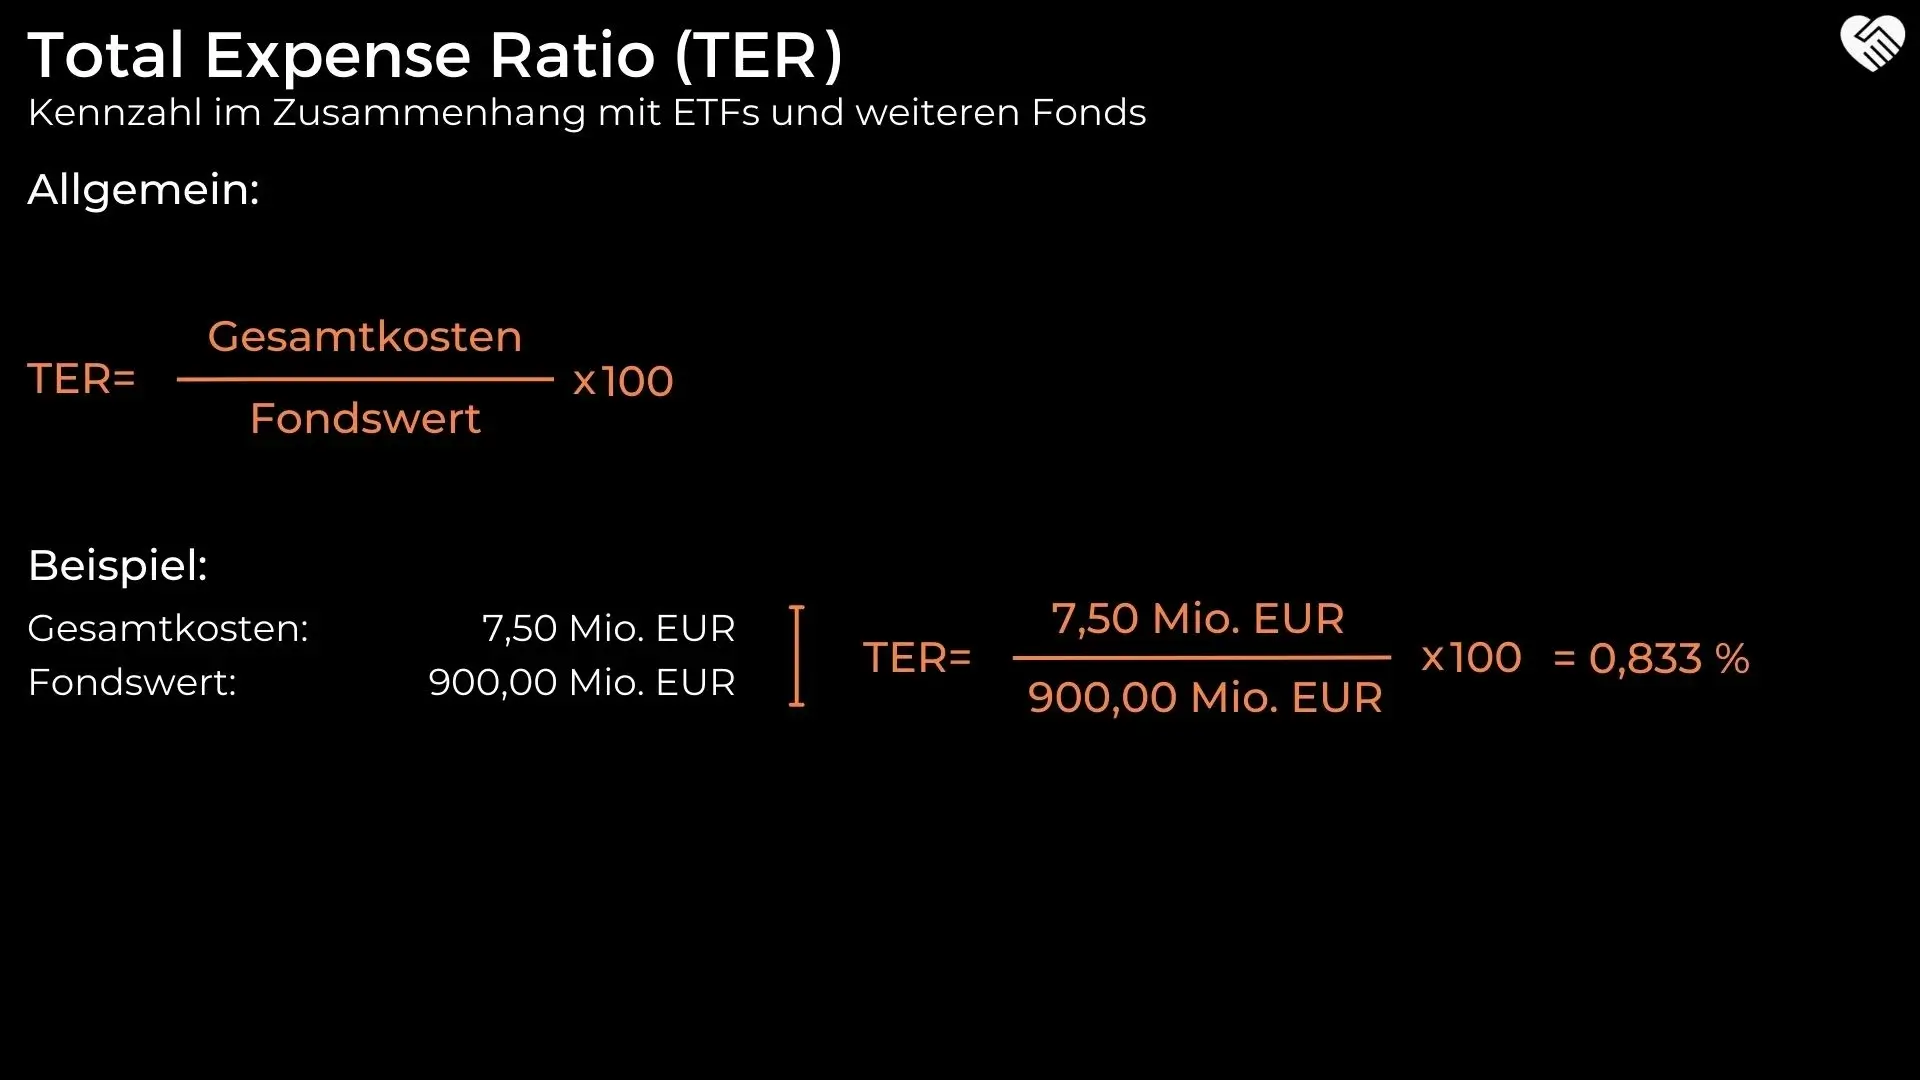 Berechnung der TER (Total Expense Ratio9